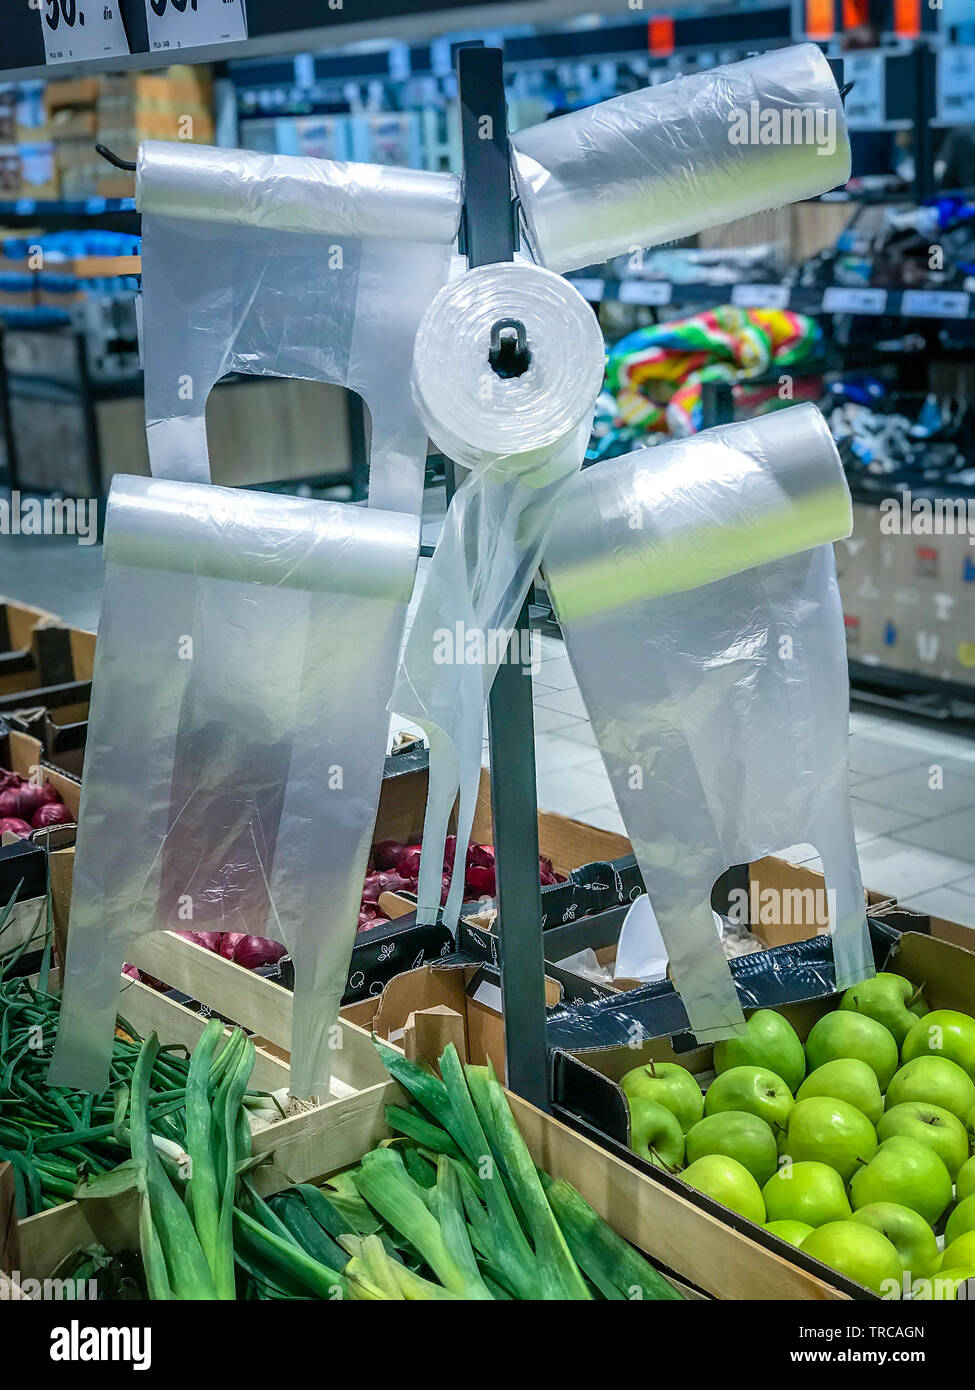 Kunststoff Cellophansäckchen hängen auf dem Stand im Supermarkt Obst - Gemüse Abteilung. Stockfoto